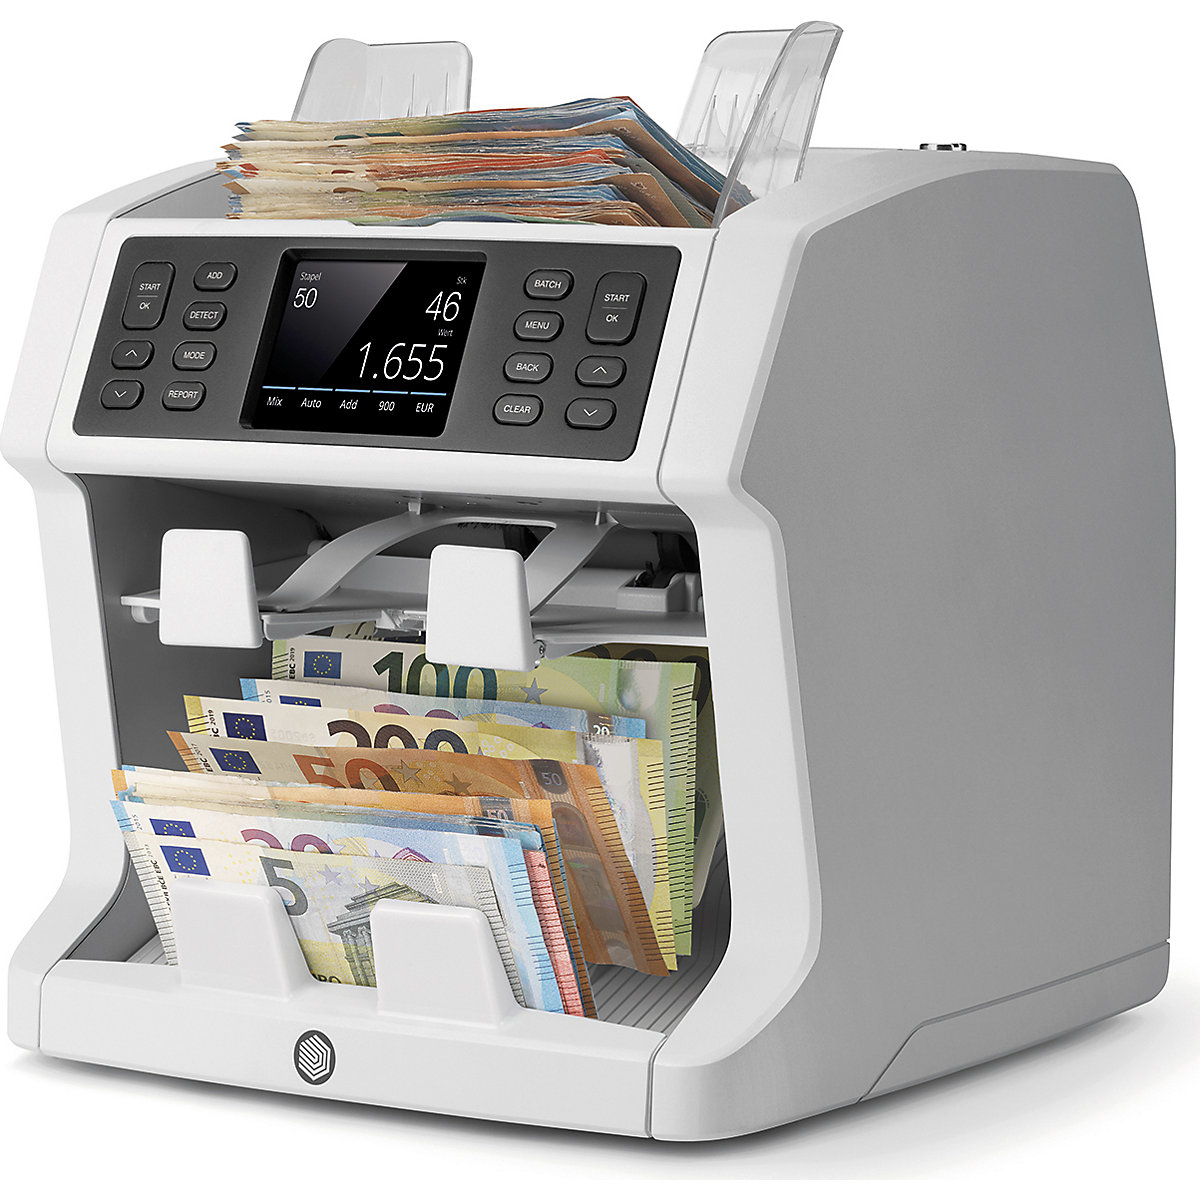 Compteuse de monnaie avec comptage non trié et fonction de tri - Safescan